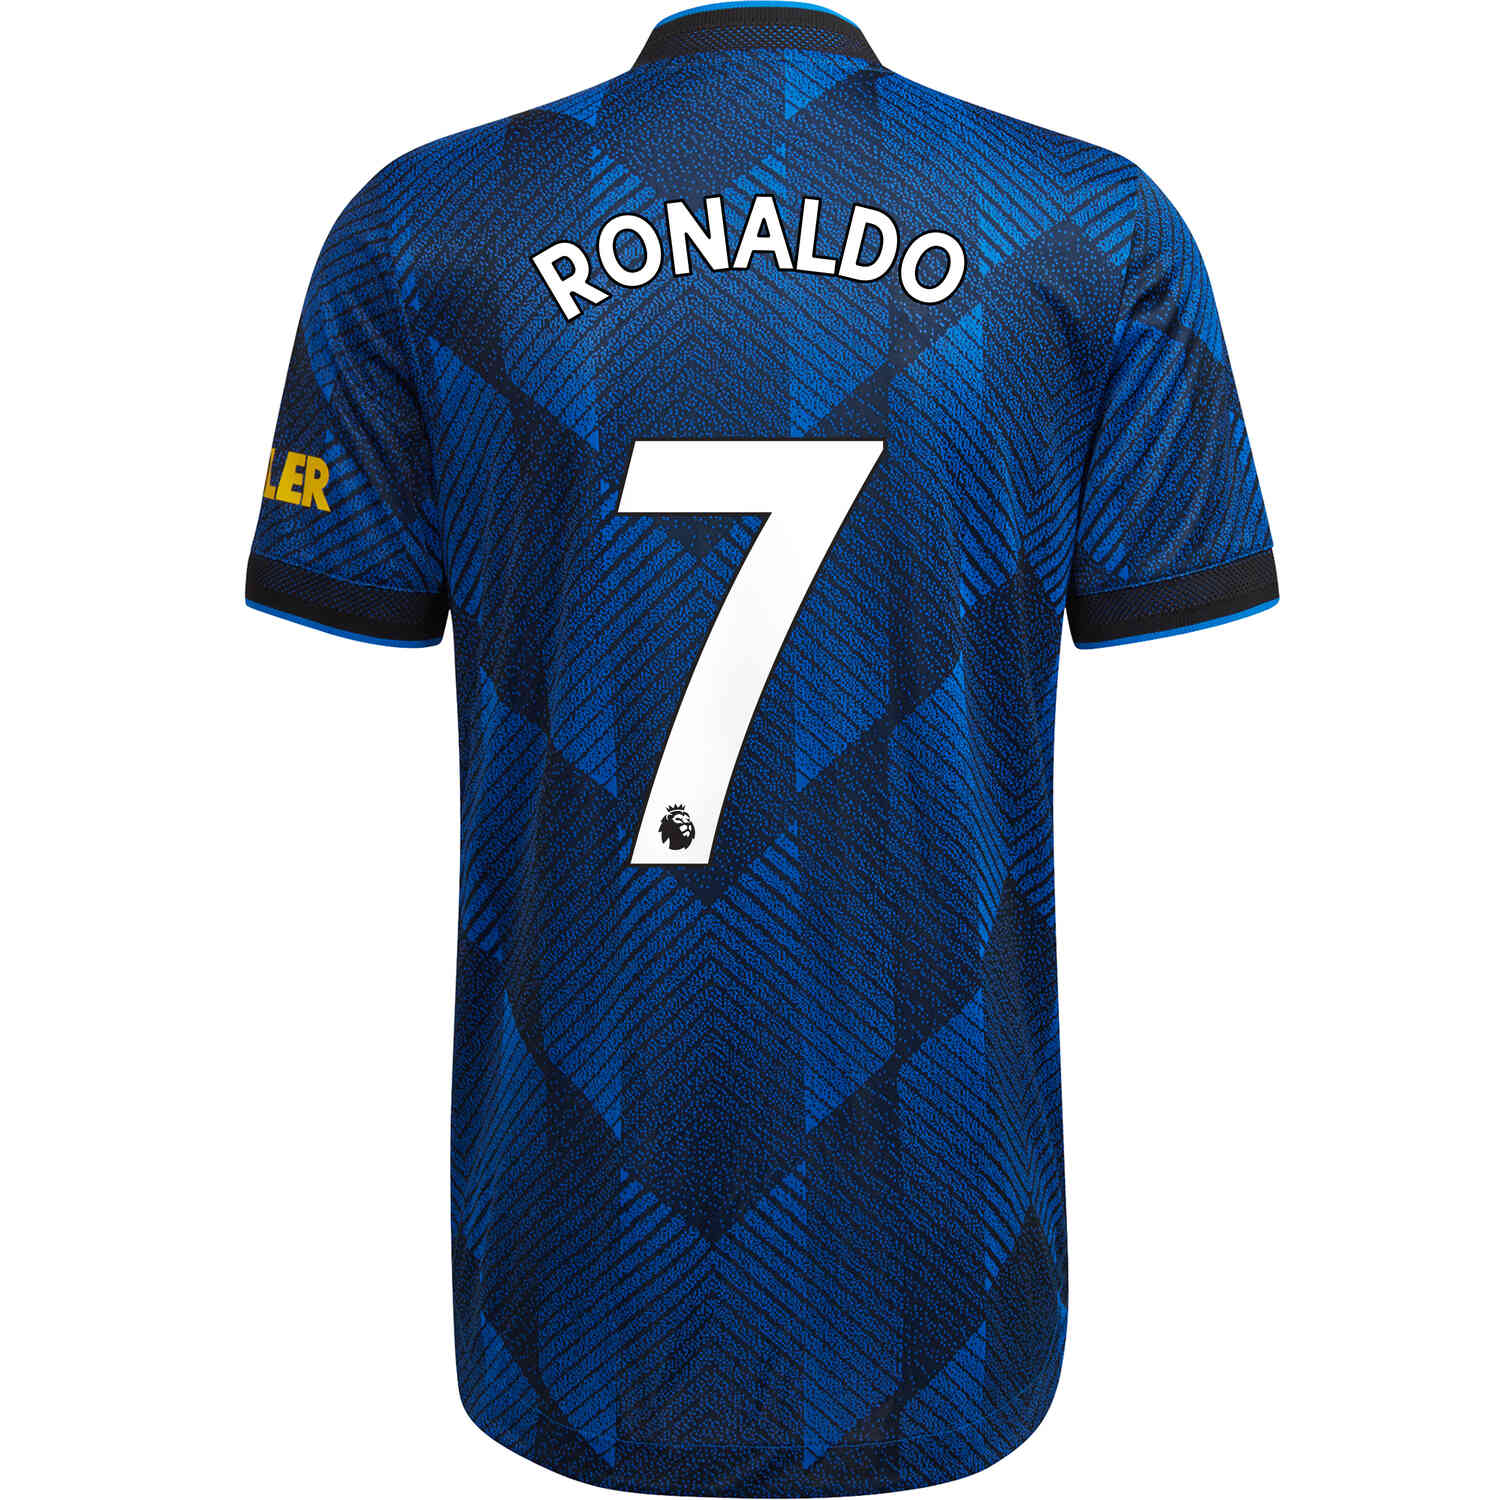 Cristiano Ronaldo Manchester United Jersey